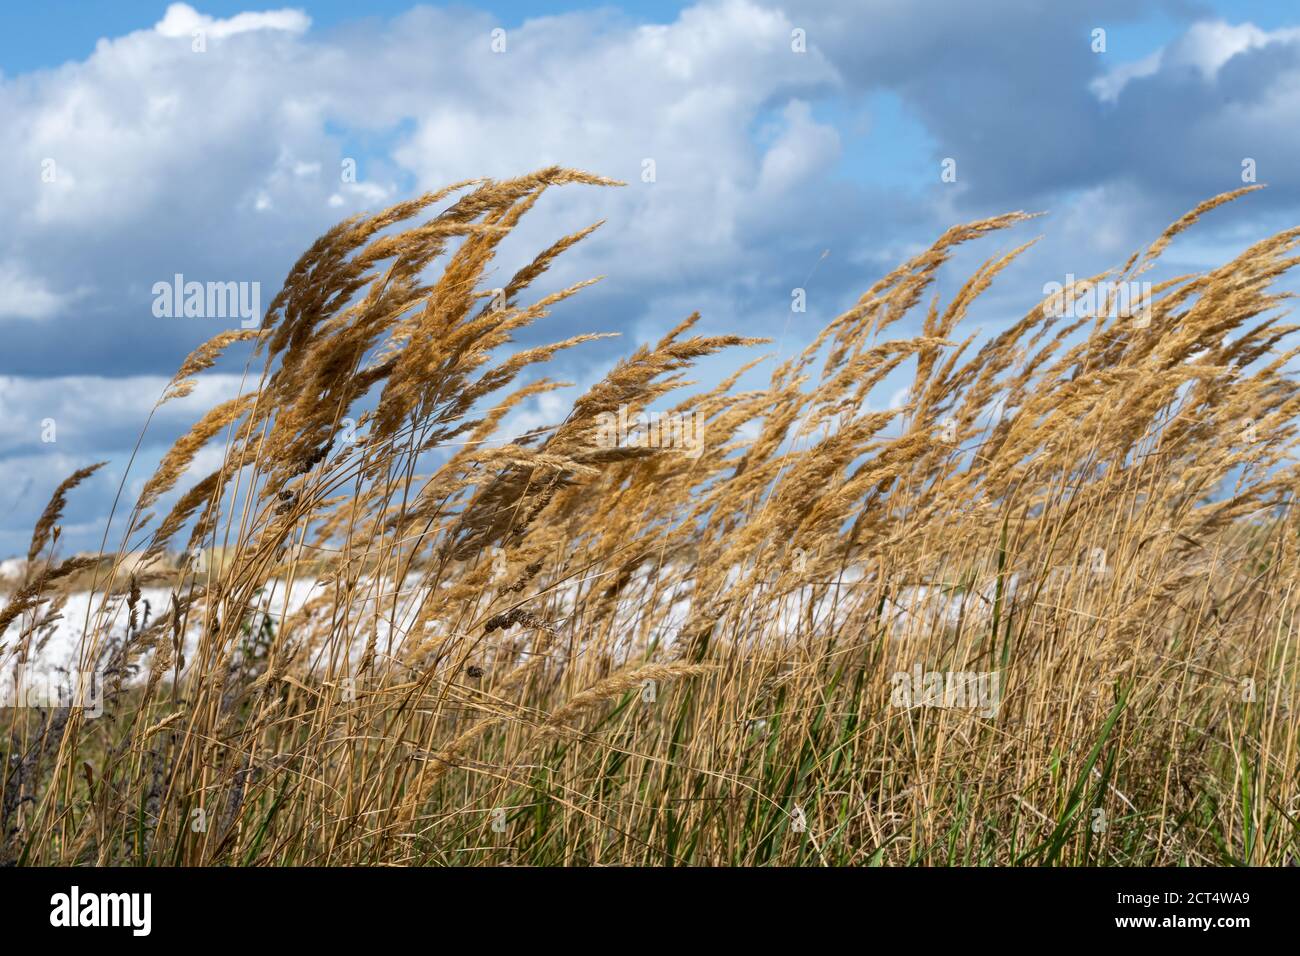 Una foto de hierba salvaje con un cielo dramático con nubes oscuras en el fondo Foto de stock